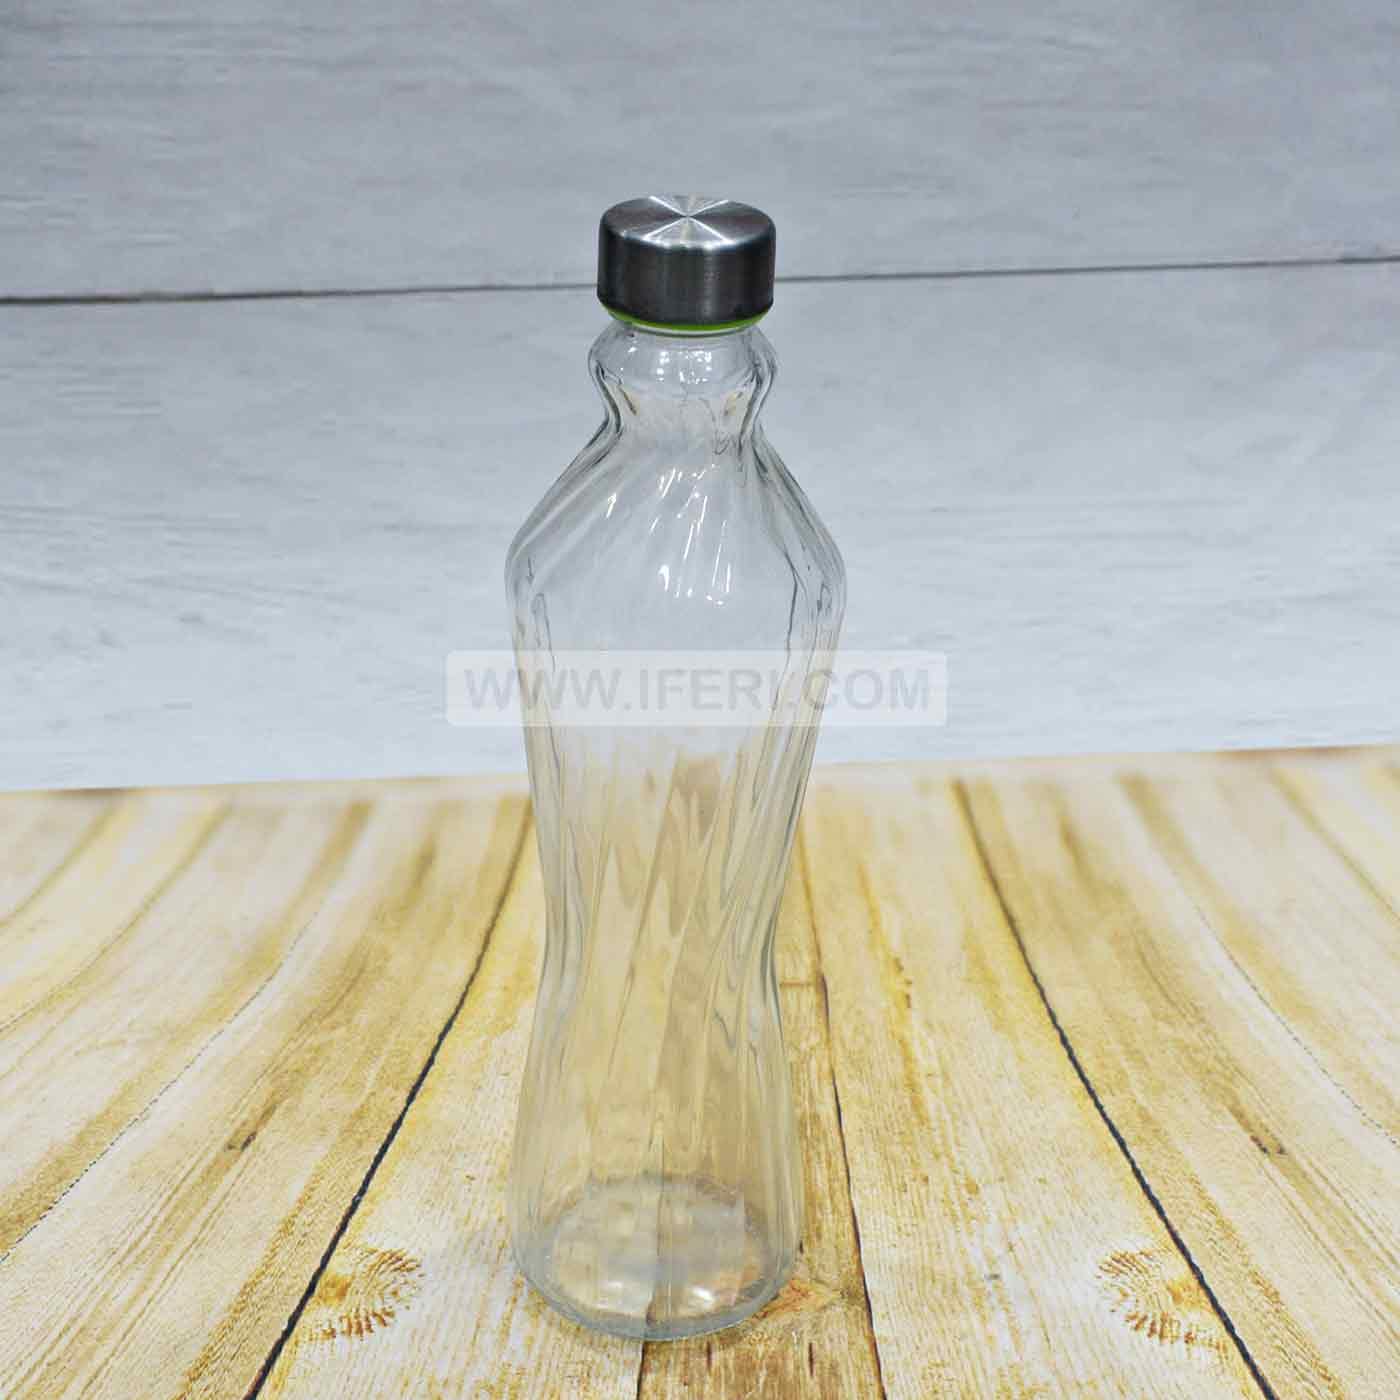 1 Liter Glass Water Bottle SN4430 - Price in BD at iferi.com